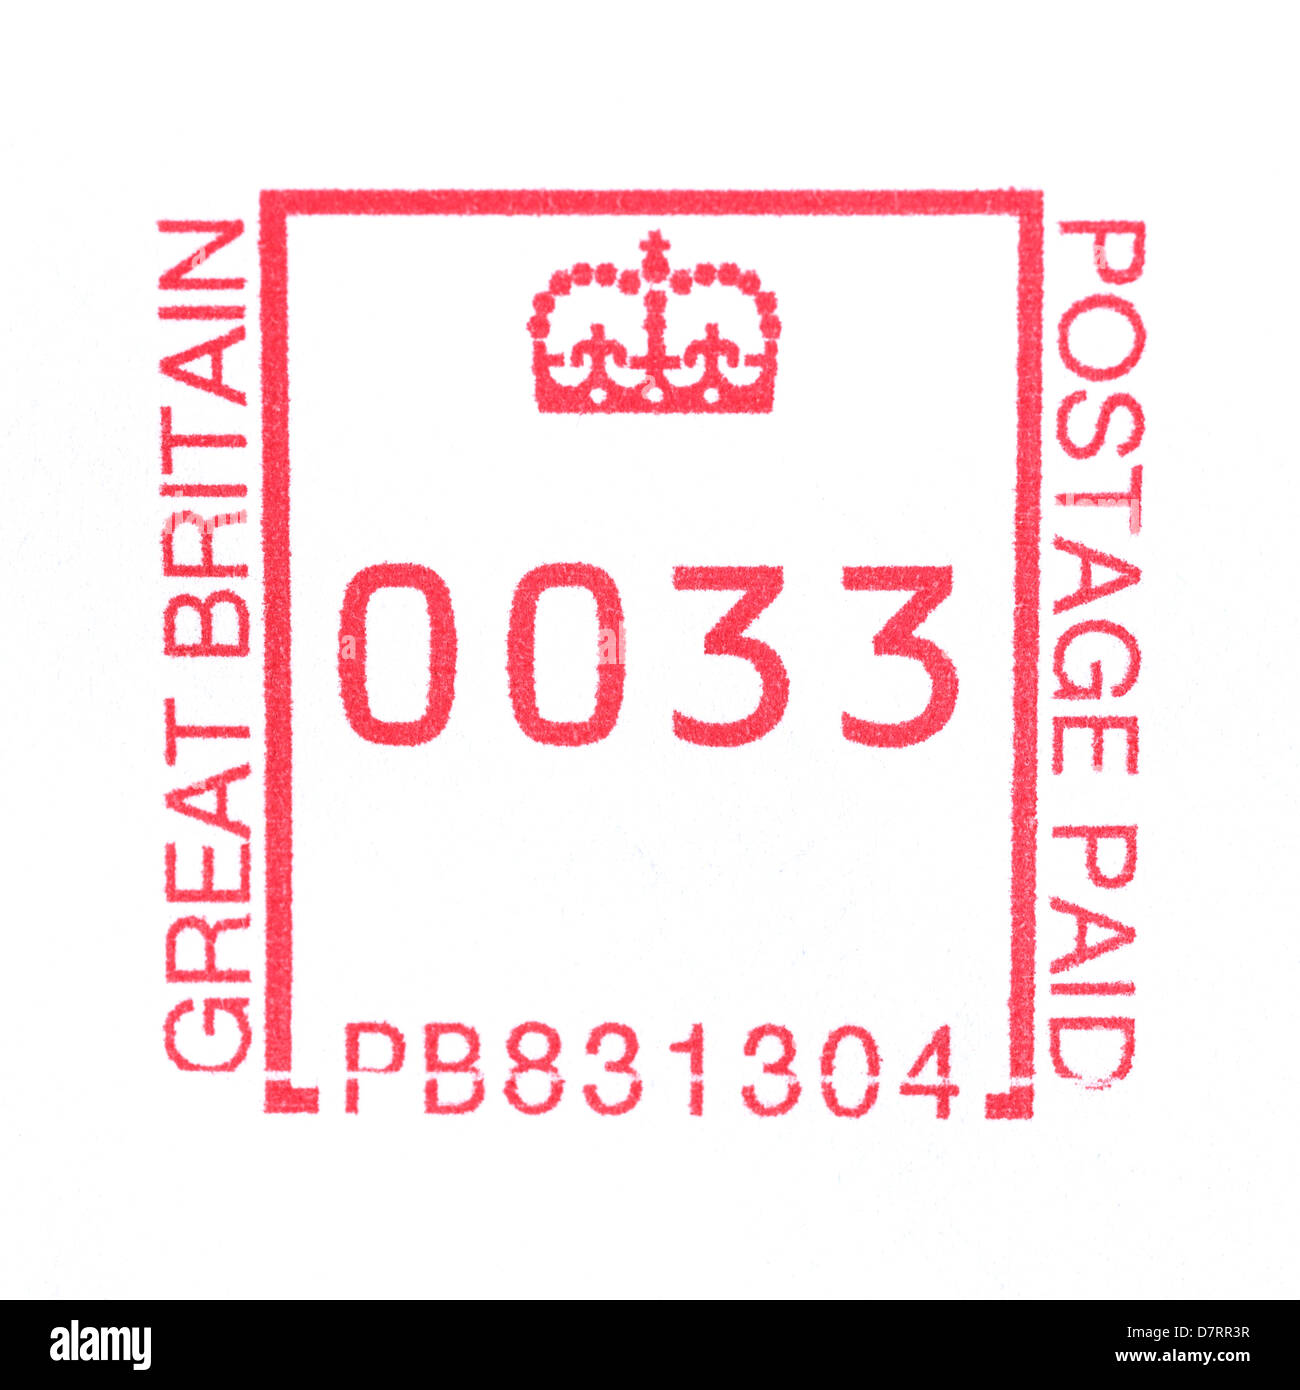 Un timbre faite par une machine à affranchir le courrier Royal montrant 33 pence l'affranchissement Banque D'Images